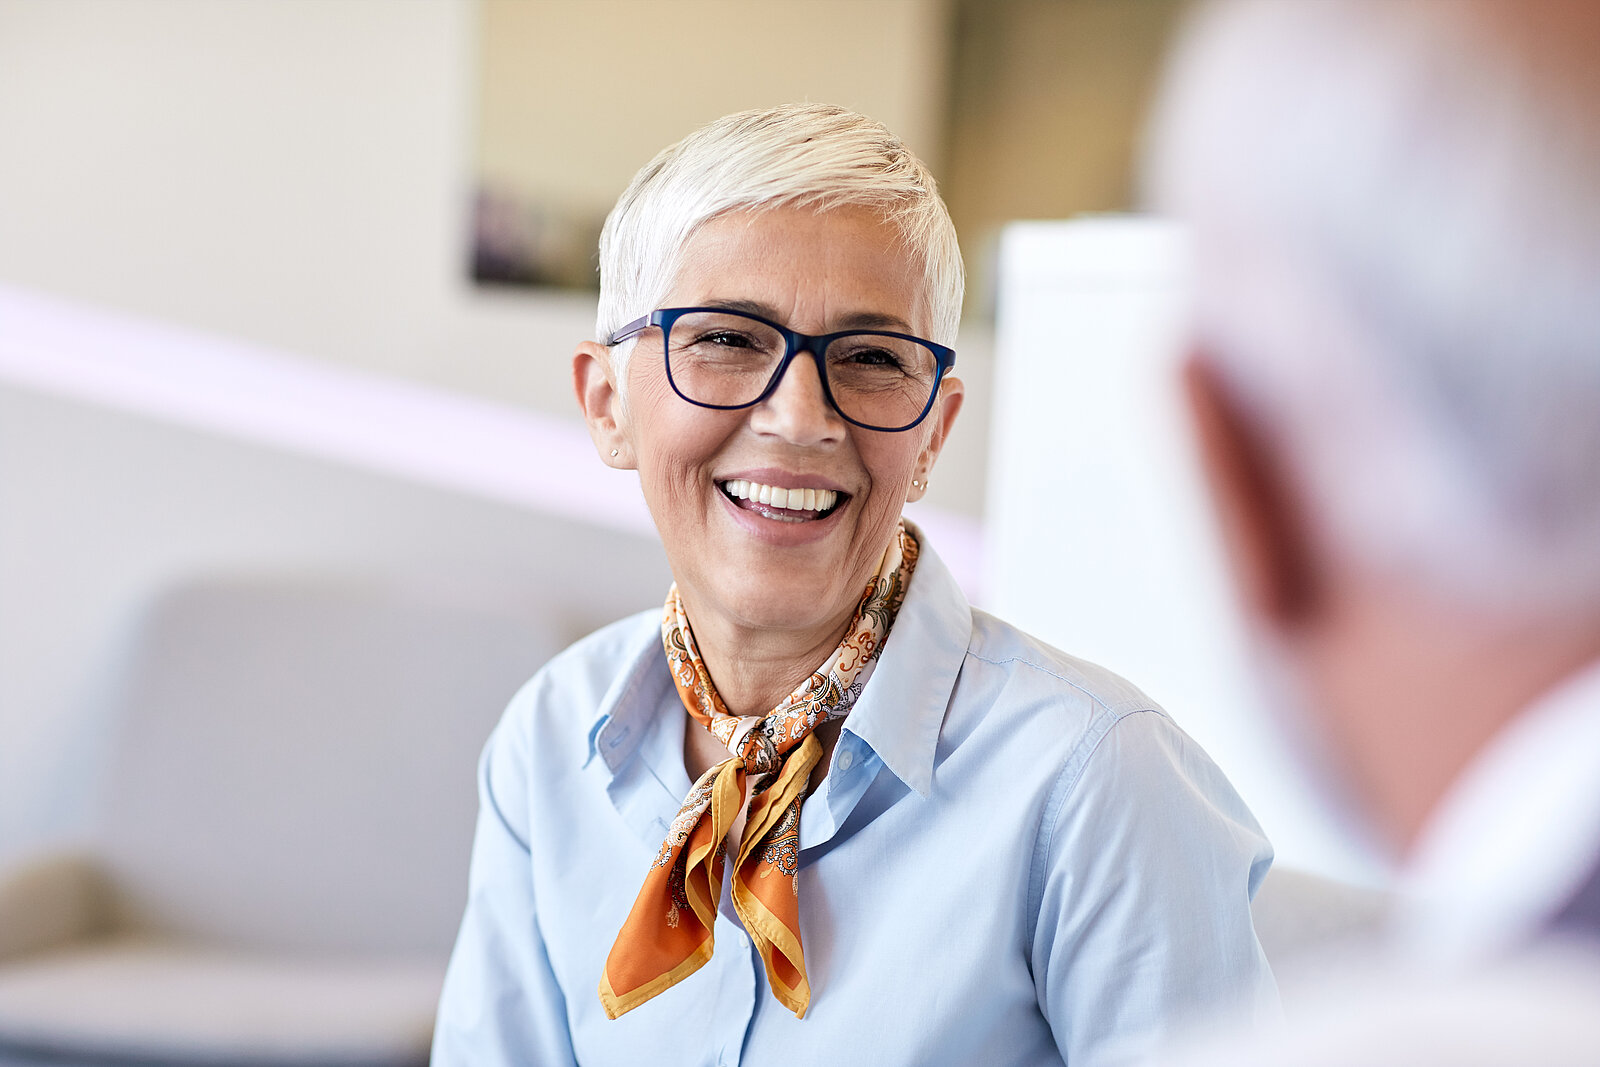 Frau mittleren Alters mit Brille lächelt ihren Gesprächspartner an